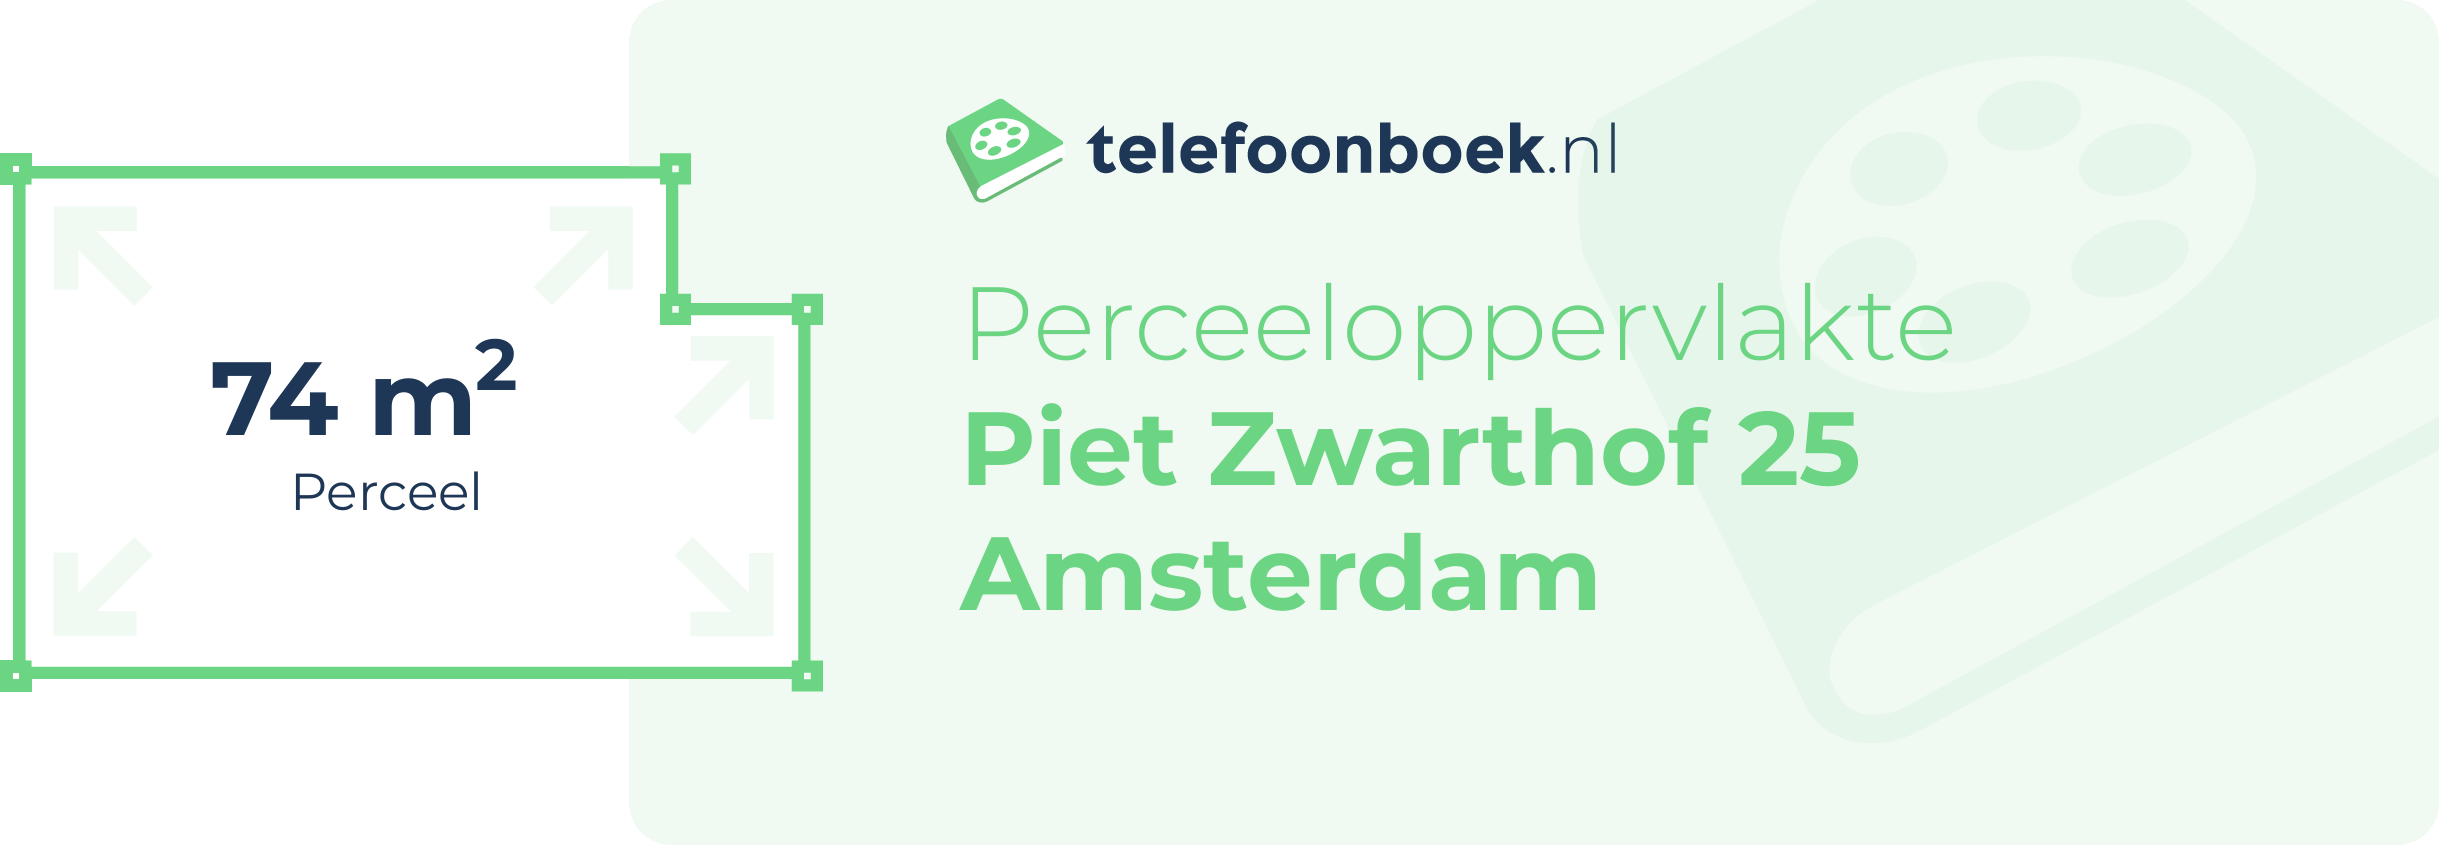 Perceeloppervlakte Piet Zwarthof 25 Amsterdam